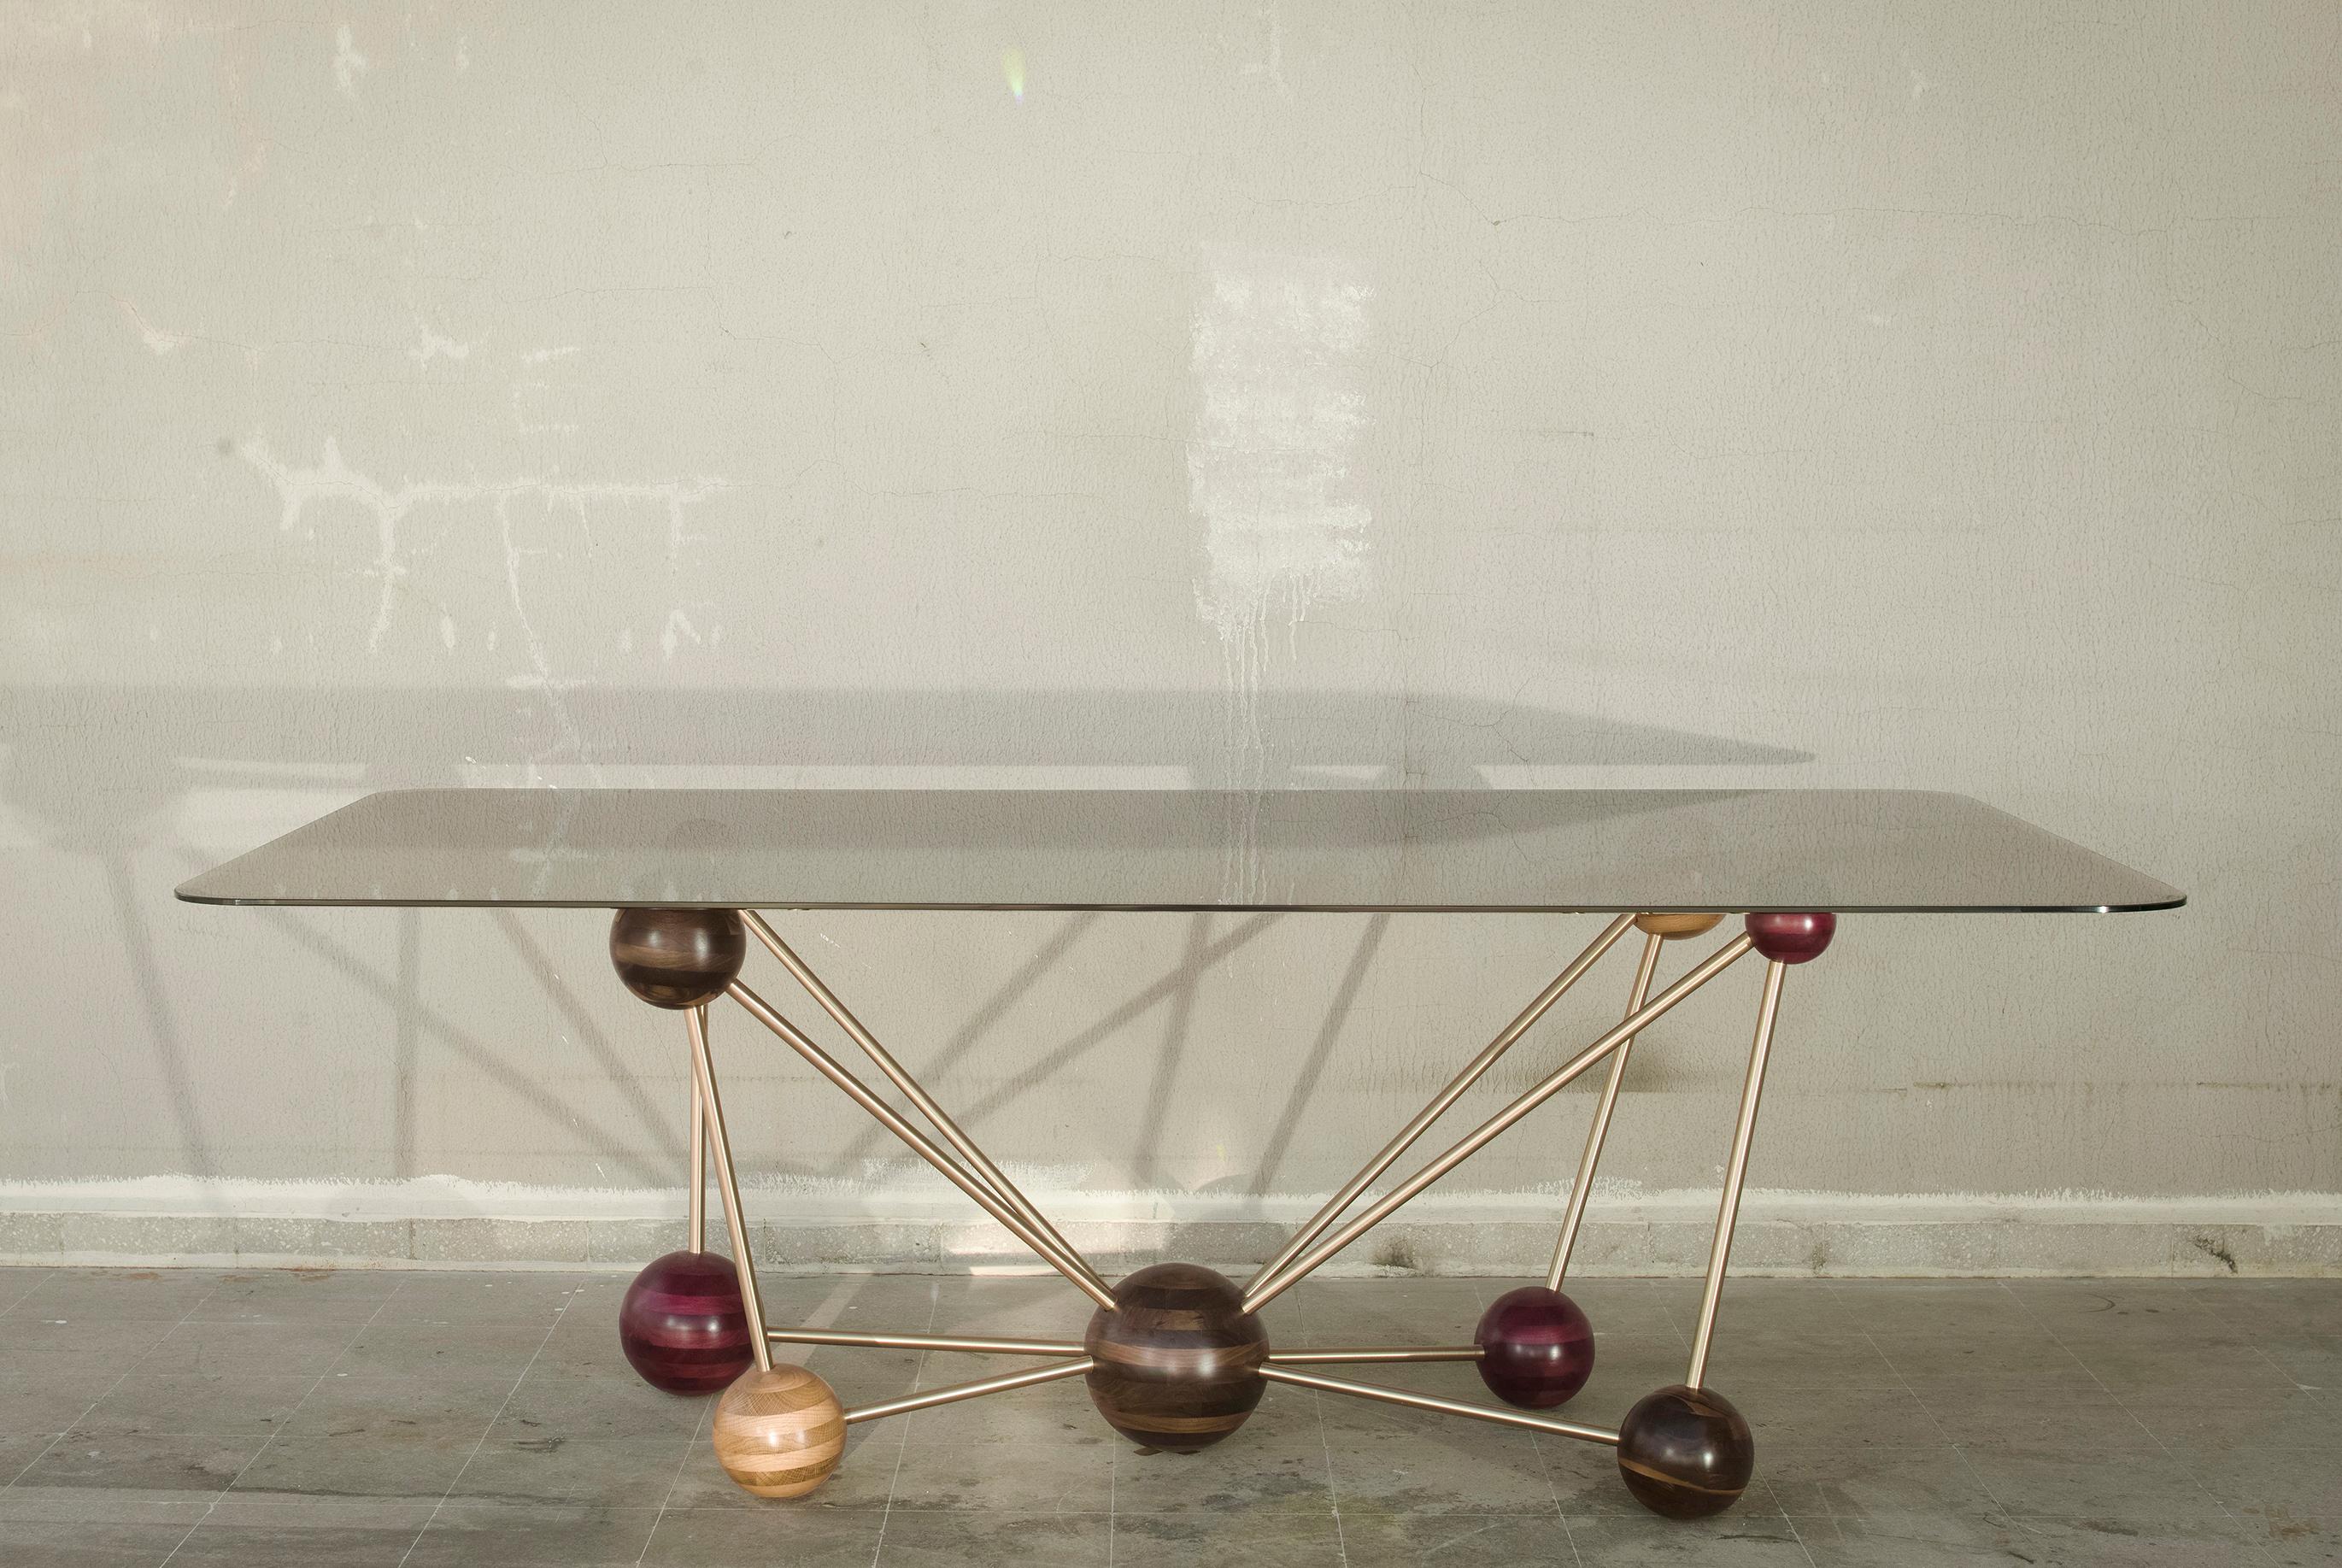 Molécule, Georges Mohasseb Design, 2014
Mélange d'art et de chimie, utilisation de matériaux et d'alliages naturels pour construire cette magnifique table de salle à manger, molécule. Pour la base, des tiges élégantes en laiton brossé sont reliées